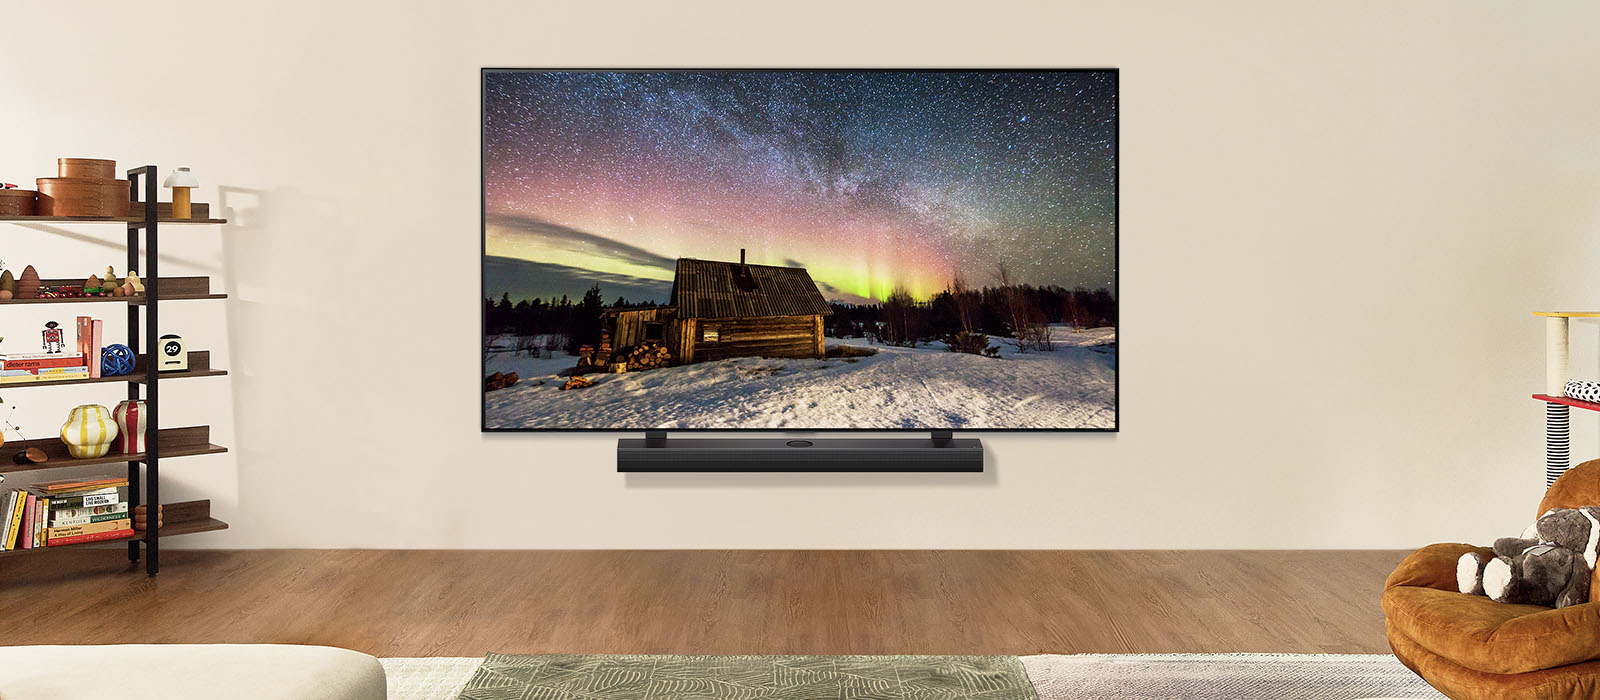 LG TV og LG Soundbar i en moderne stue på dagtid. Skjermbildet av nordlyset vises med ideelle lysnivåer.